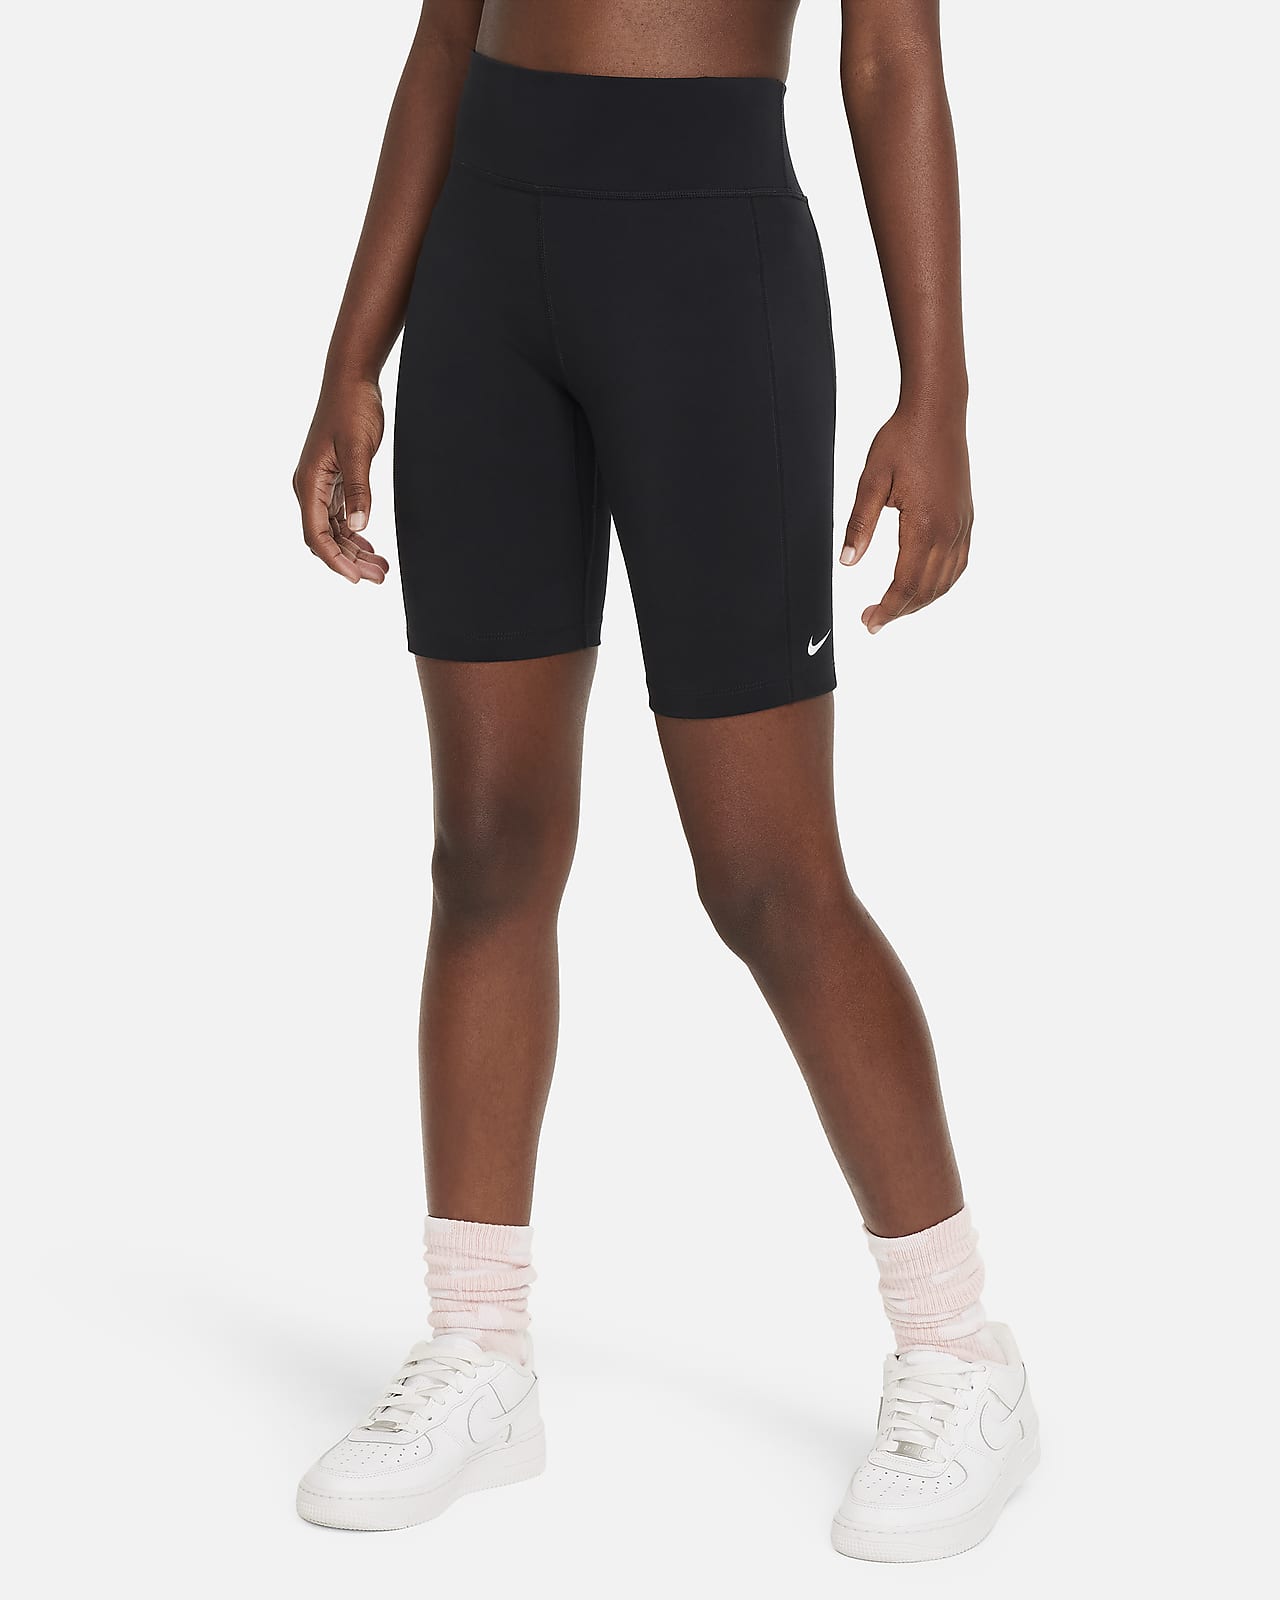 Nike One Leak Protection: Periodensichere Bike-Shorts mit hohem Taillenbund für ältere Kinder (Mädchen) (ca. 18 cm)